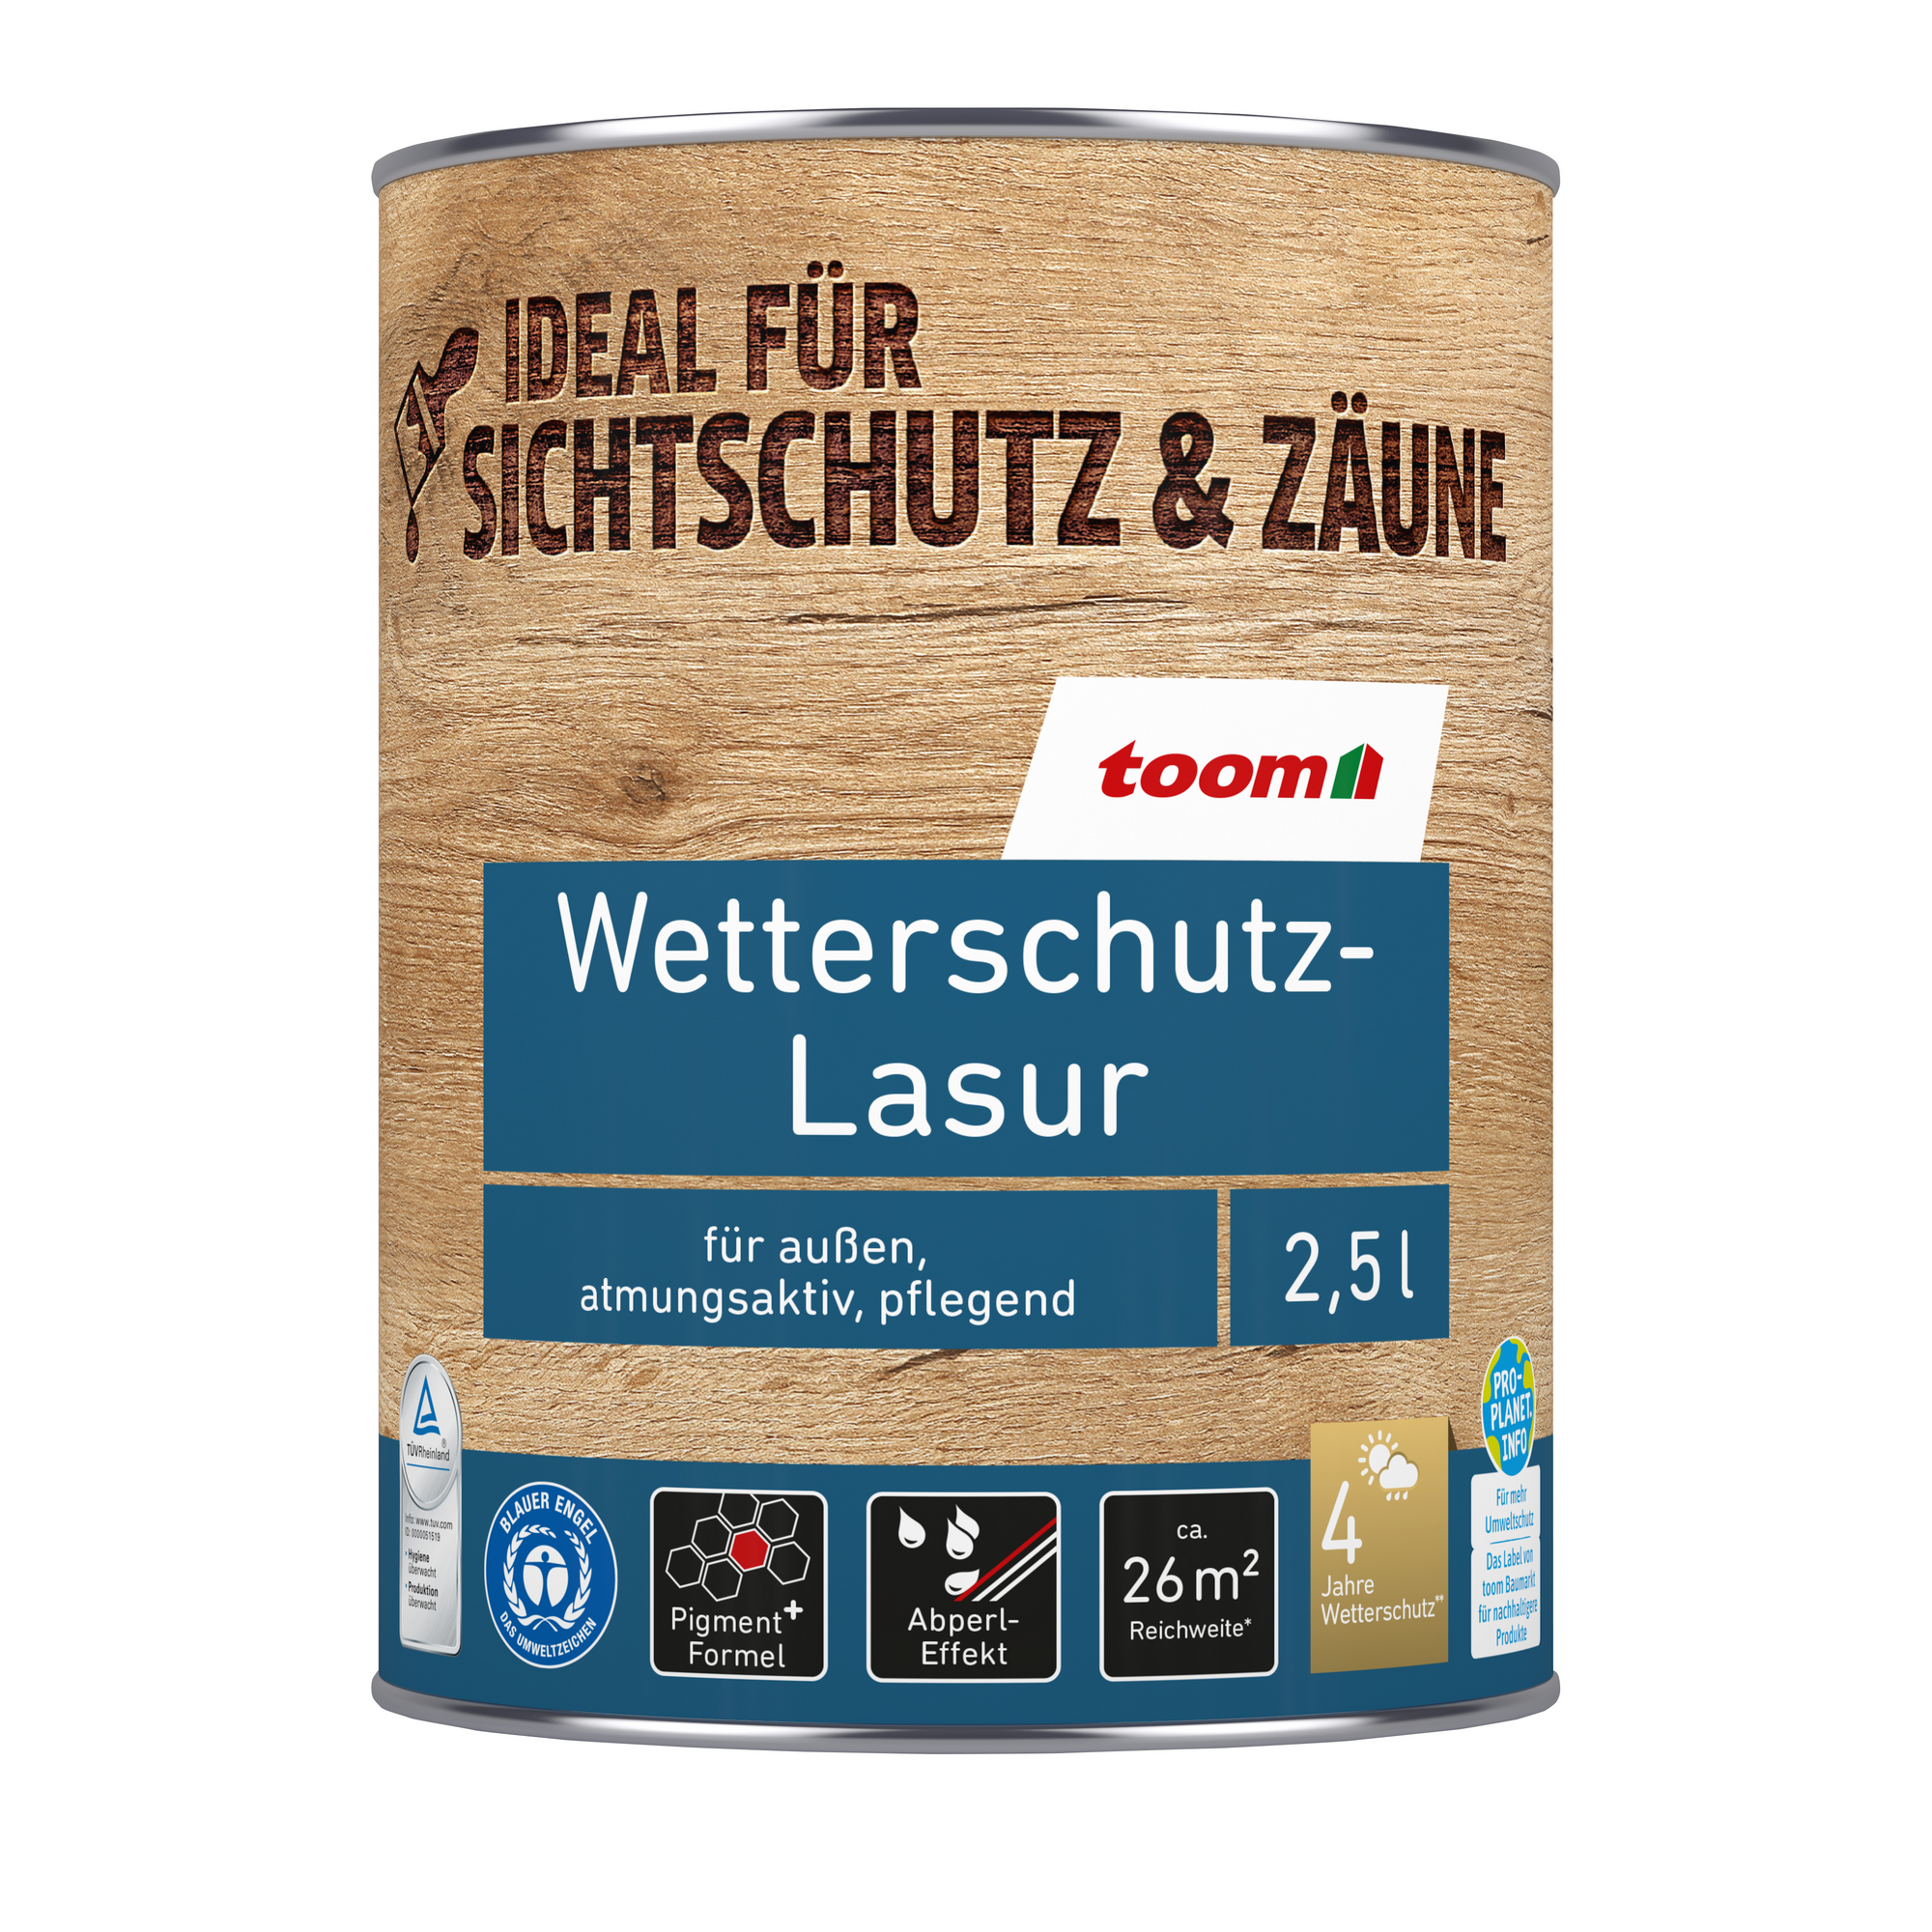 Wetterschutz-Lasur mahagonifarben 2,5 l + product picture